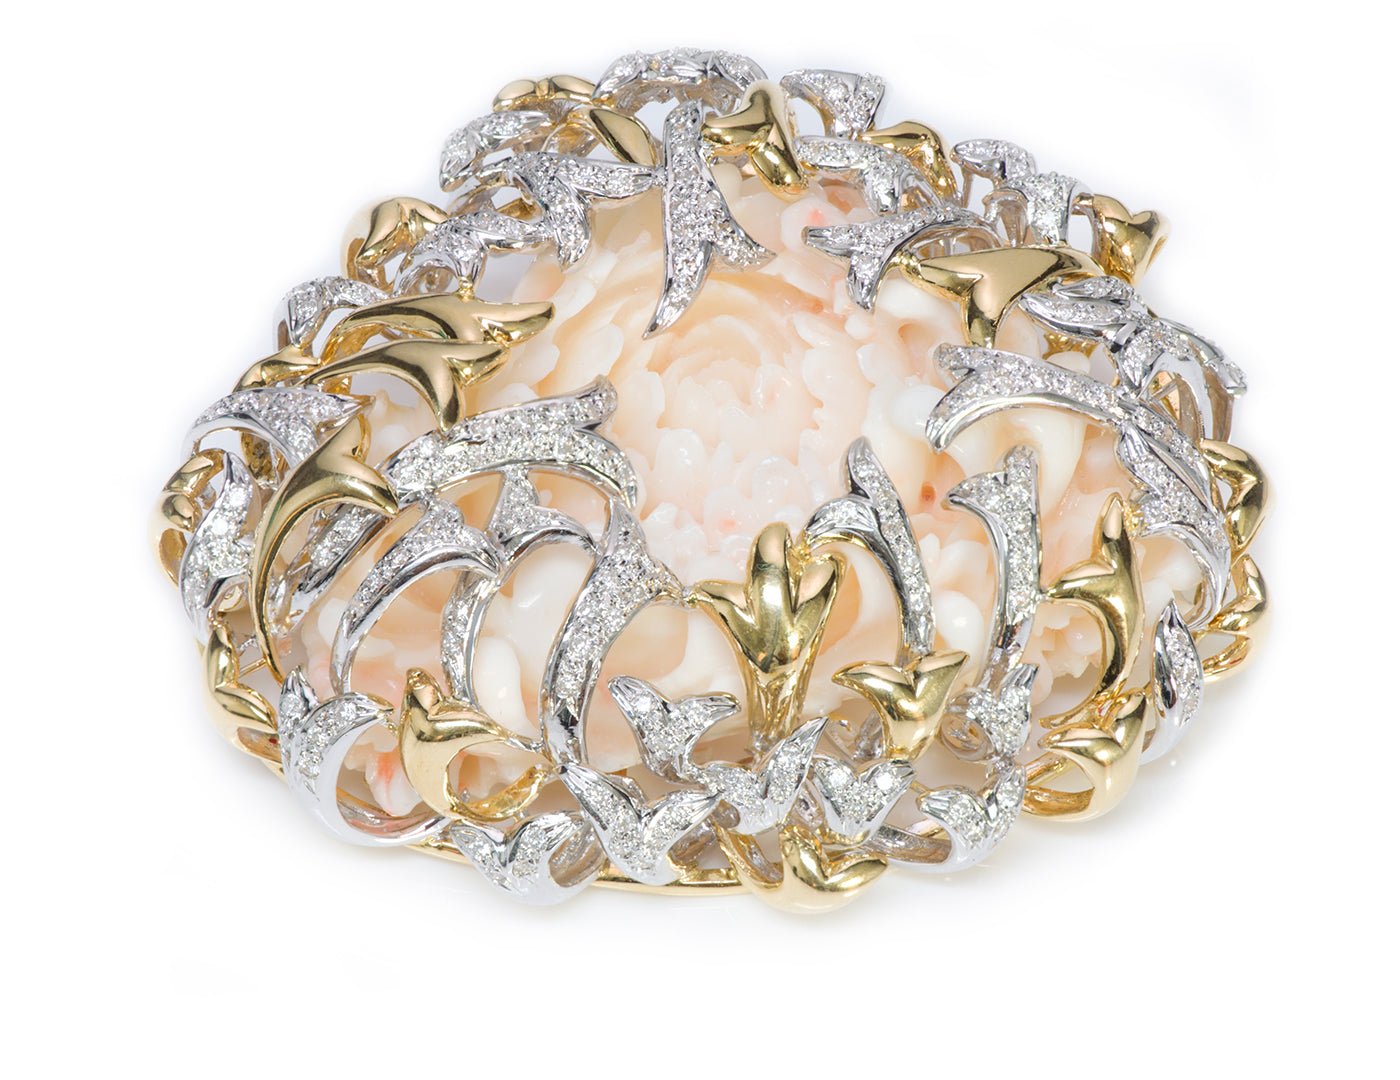 H. Stern DVF Diane Von Furstenberg Gold Diamond Coral Brooch